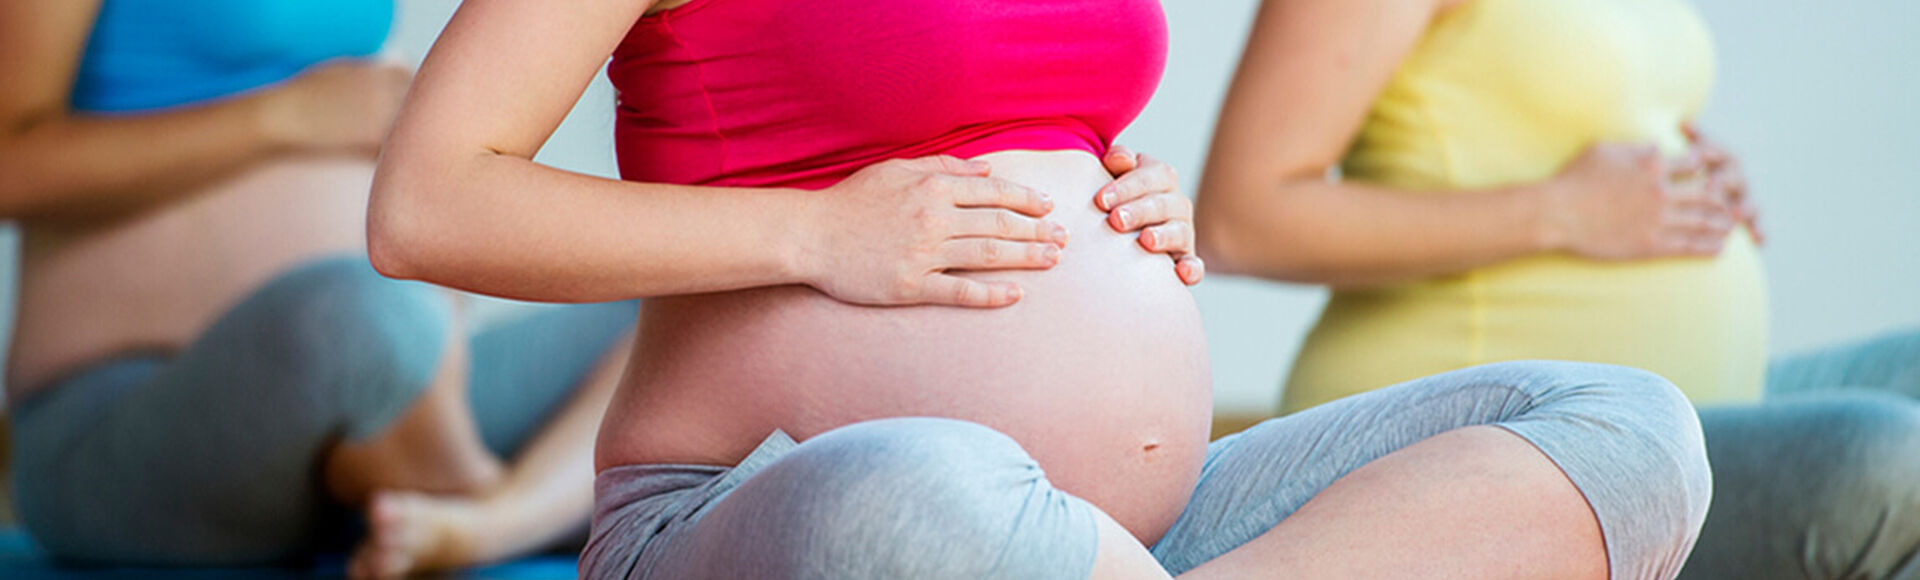 Programa de control prenatal | by Huggies Argentina